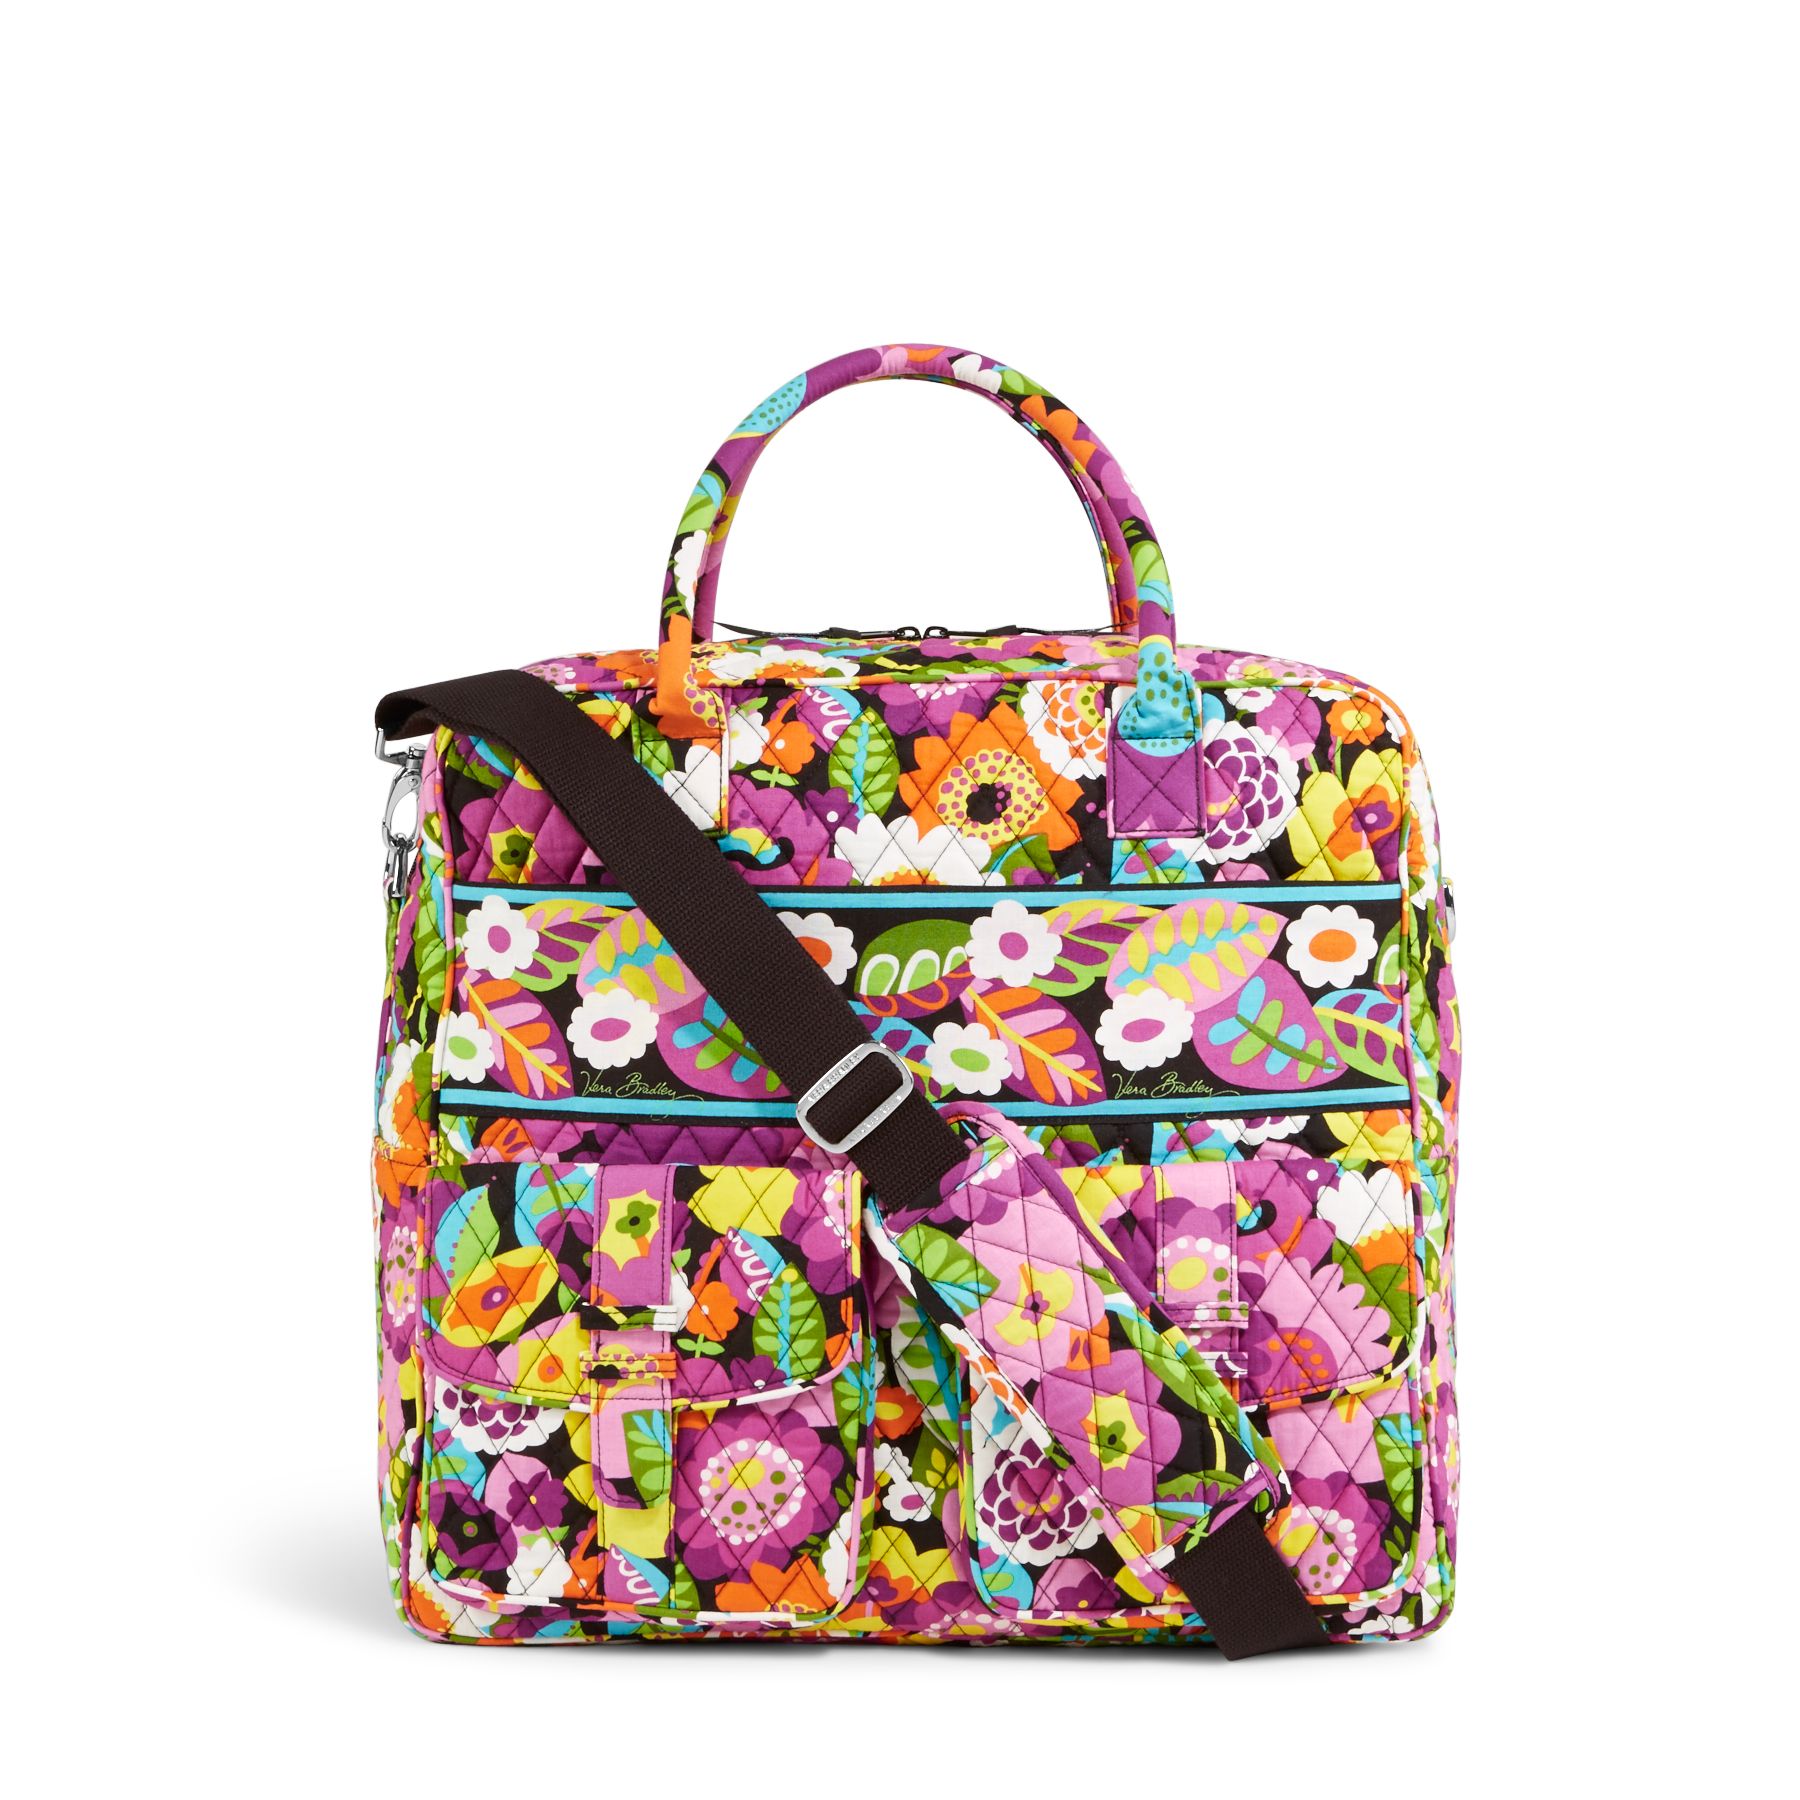 Vera Bradley Grand Cargo Bag Travel Bag | eBay